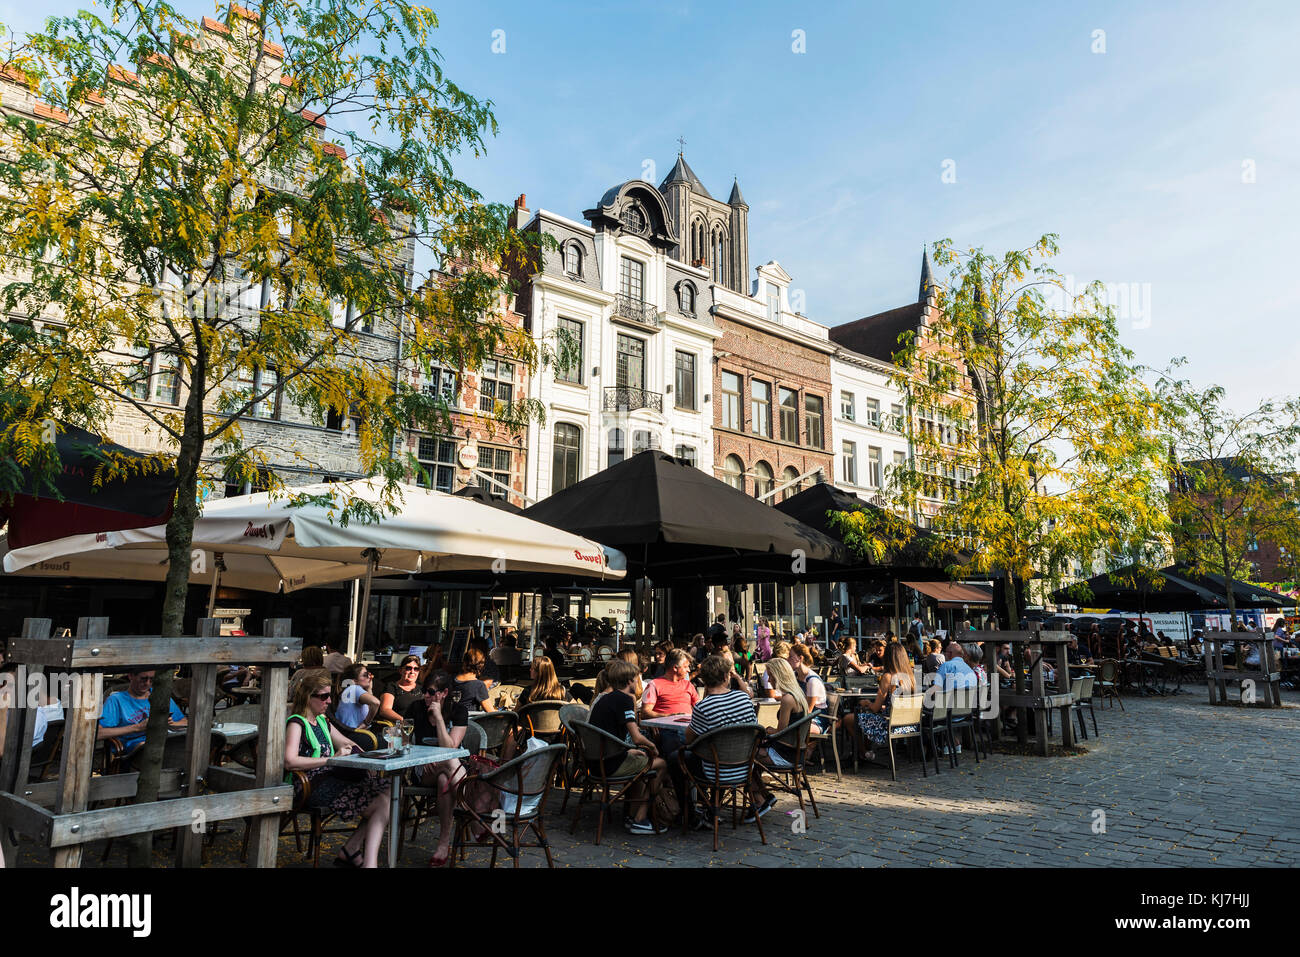 Gand, Belgique - 28 août 2017 : les gens dans un bar boire un verre et de marcher dans une rue de la vieille ville de la cité médiévale de Gand, Belgique Banque D'Images